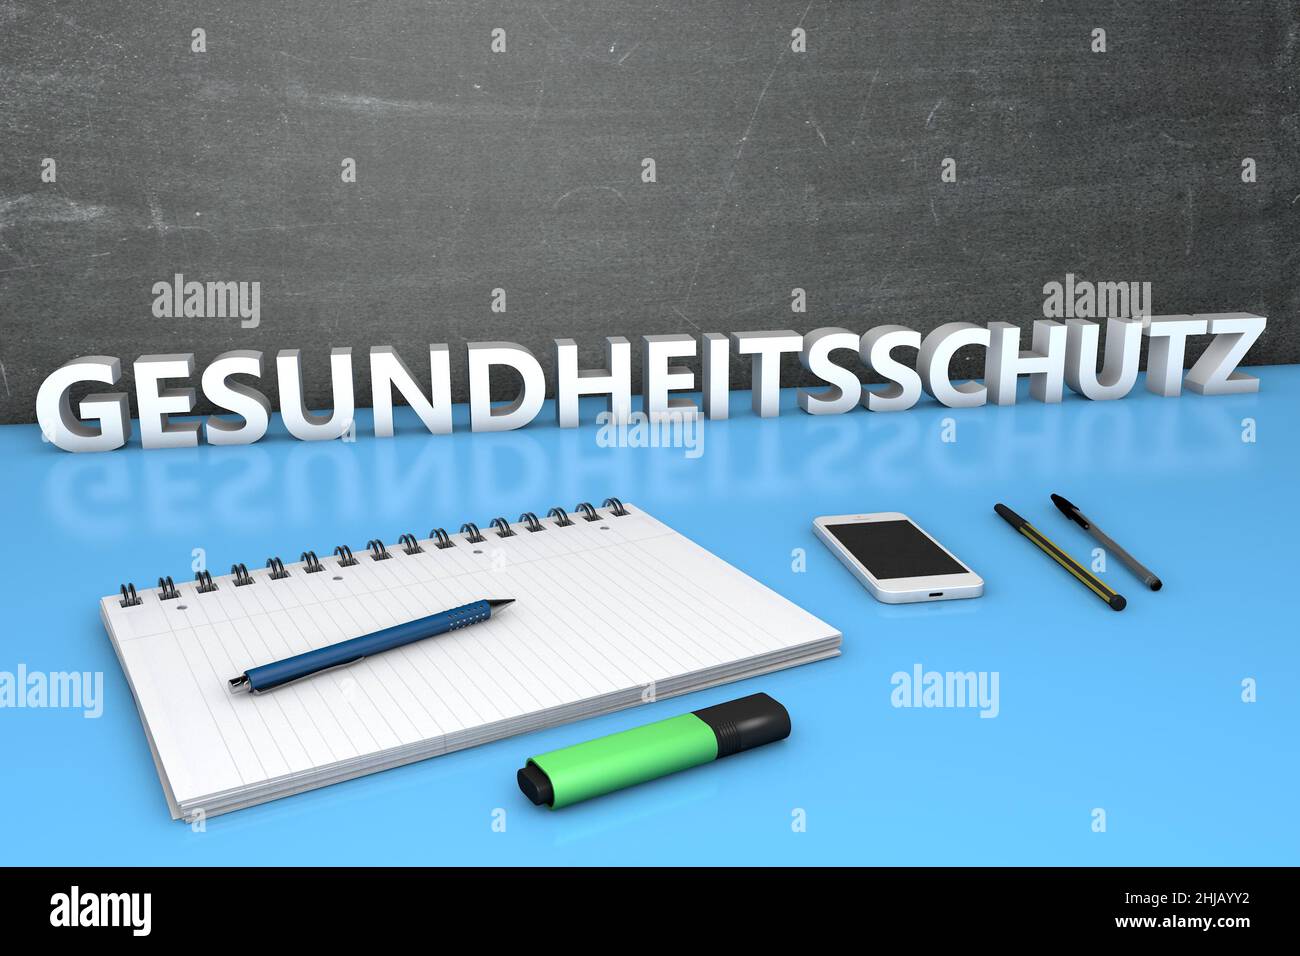 Gesundheitsschutz - termine tedesco per la protezione della salute o della salute - testo concetto con lavagna, notebook, penne e telefono cellulare. 3D rendere illustratore Foto Stock